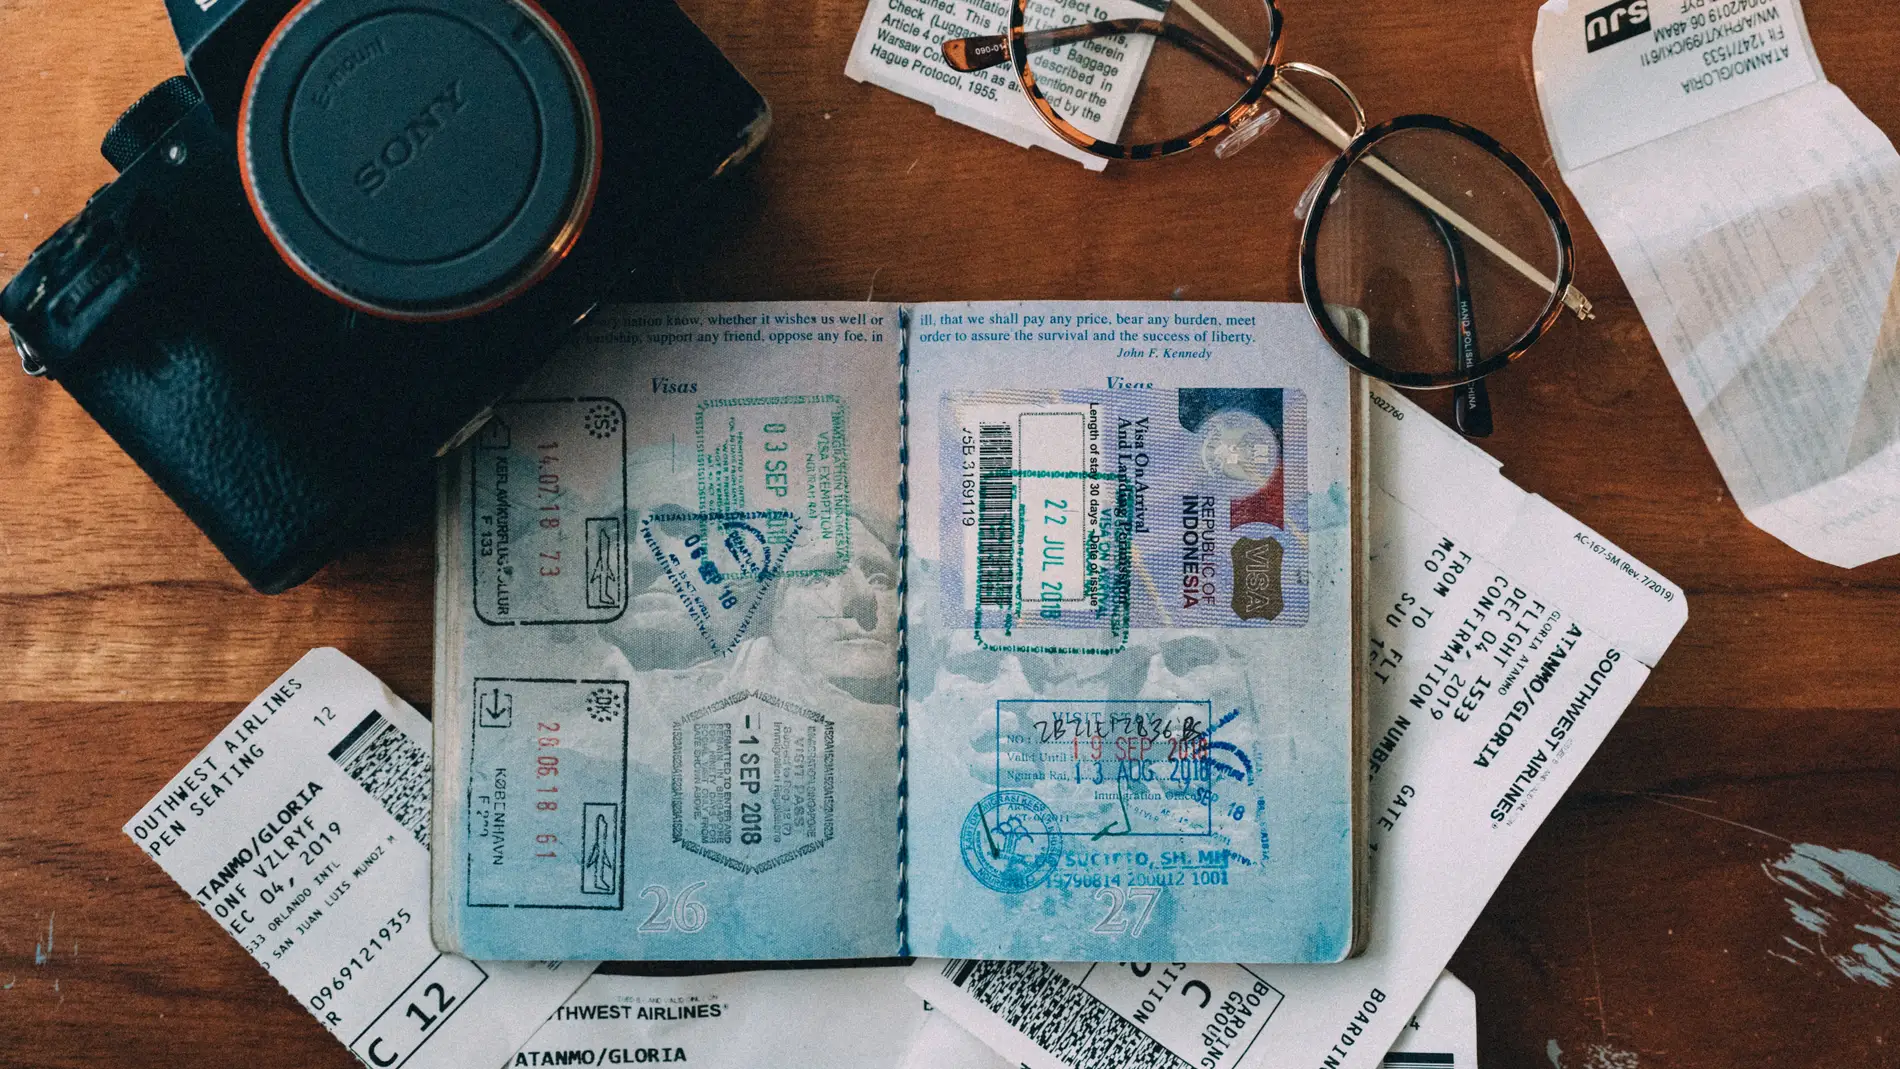 Foto de archivo de un pasaporte abierto y sellado/ Unsplash